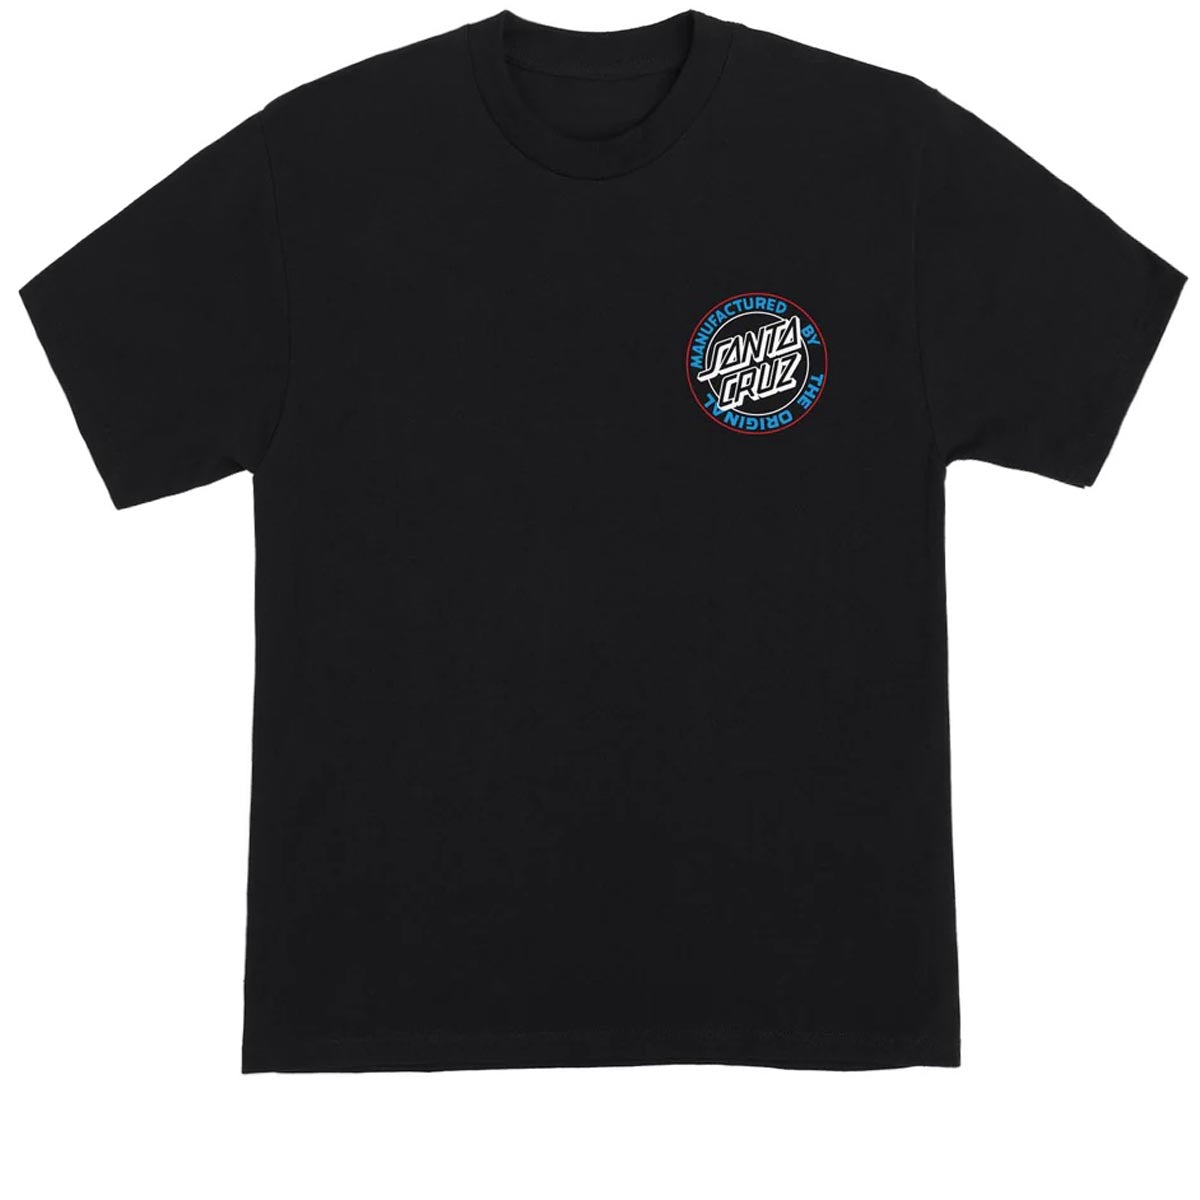 Santa Cruz Natas Screaming Panther T-Shirt - Black image 2